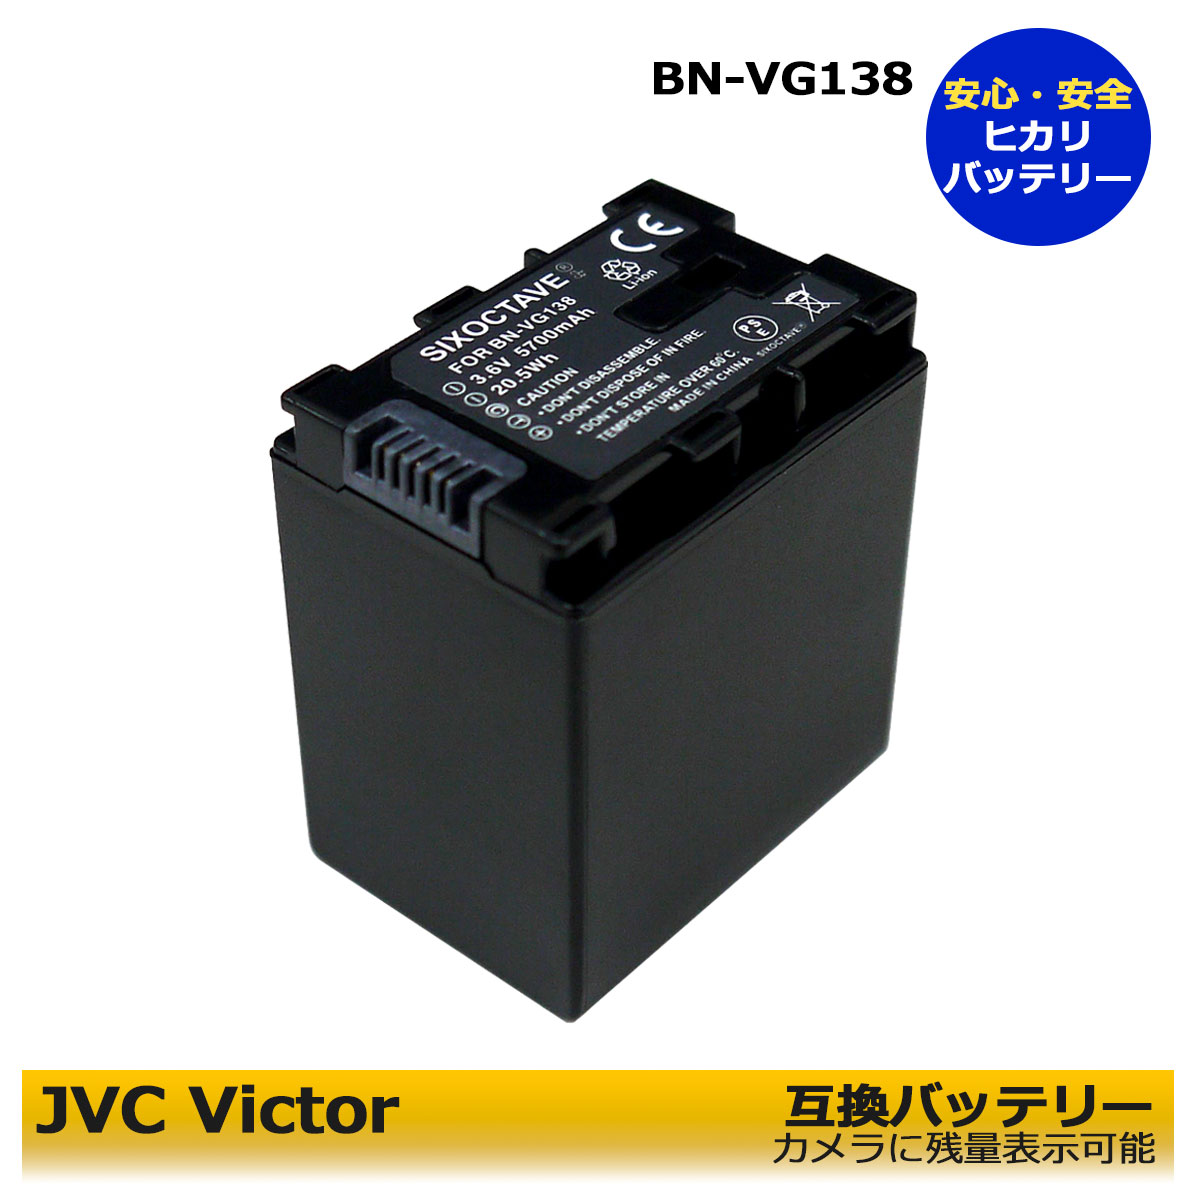 【あす楽対応】 VICTOR BN-VG138 ...の商品画像